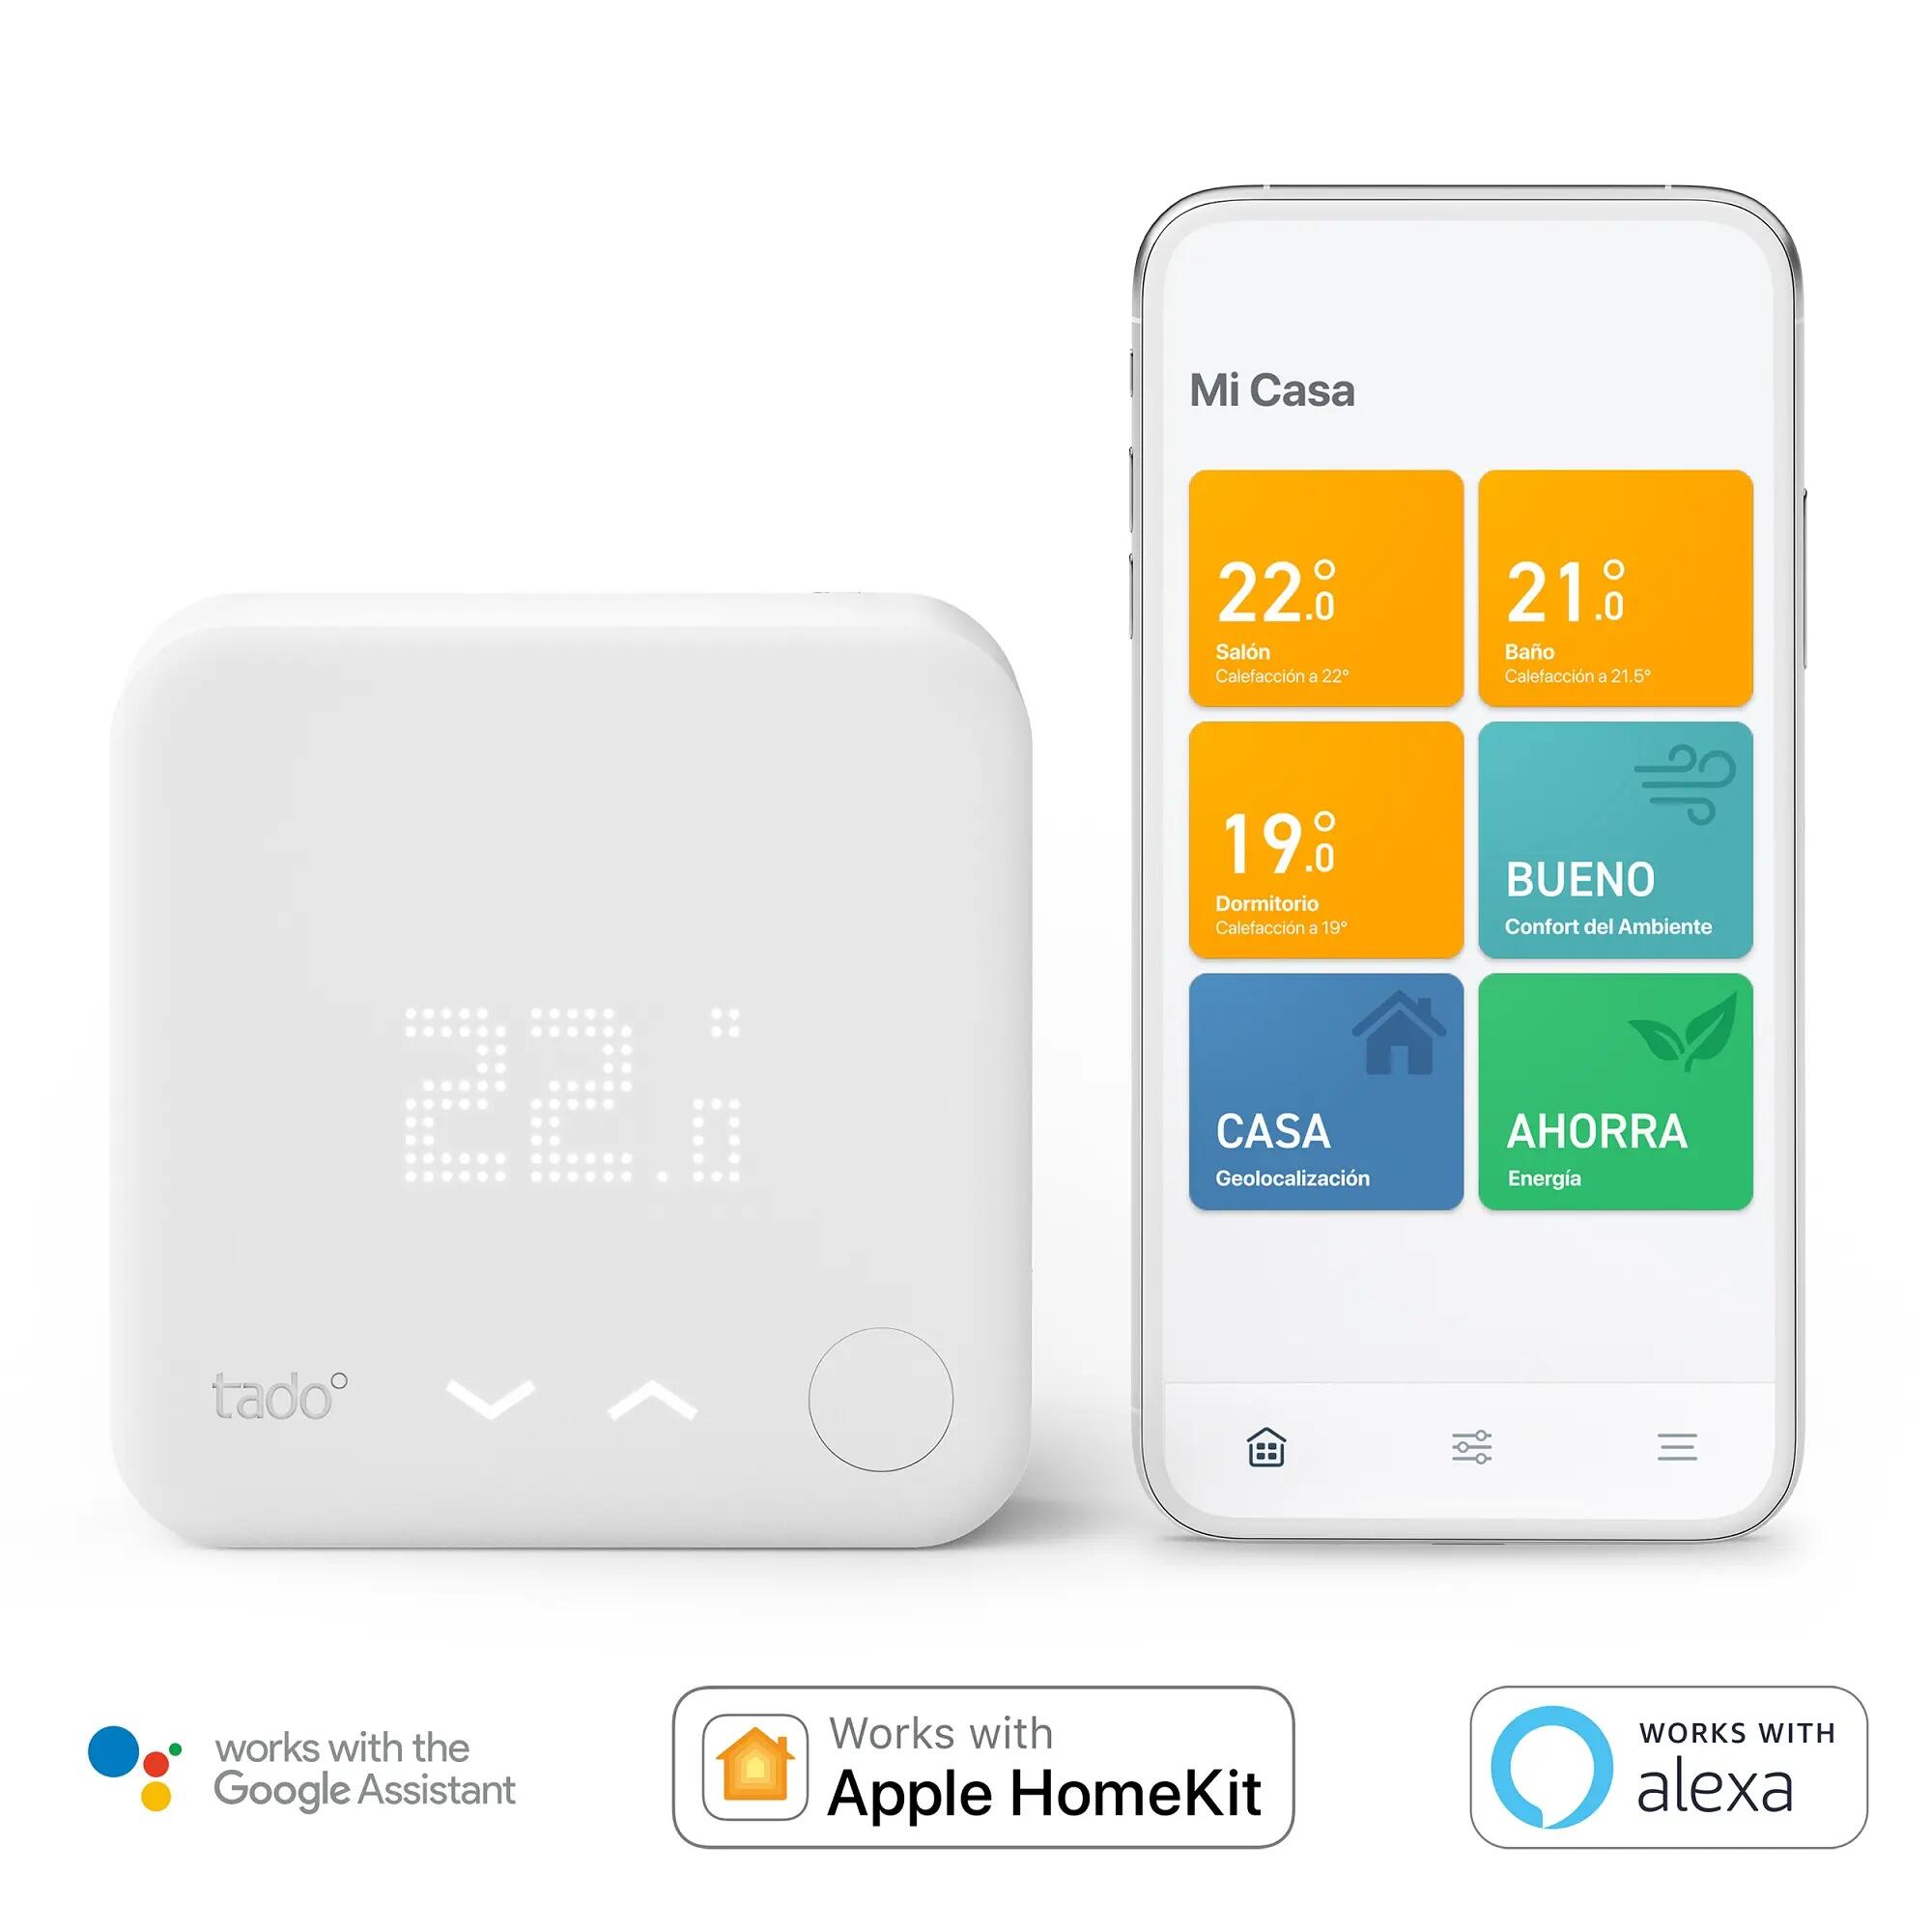 Termostato WiFi inteligente SPC VESTA THERMOSTAT para caldera de gas,  manejo por app, compatible Alexa/Google, de pared - Blanco